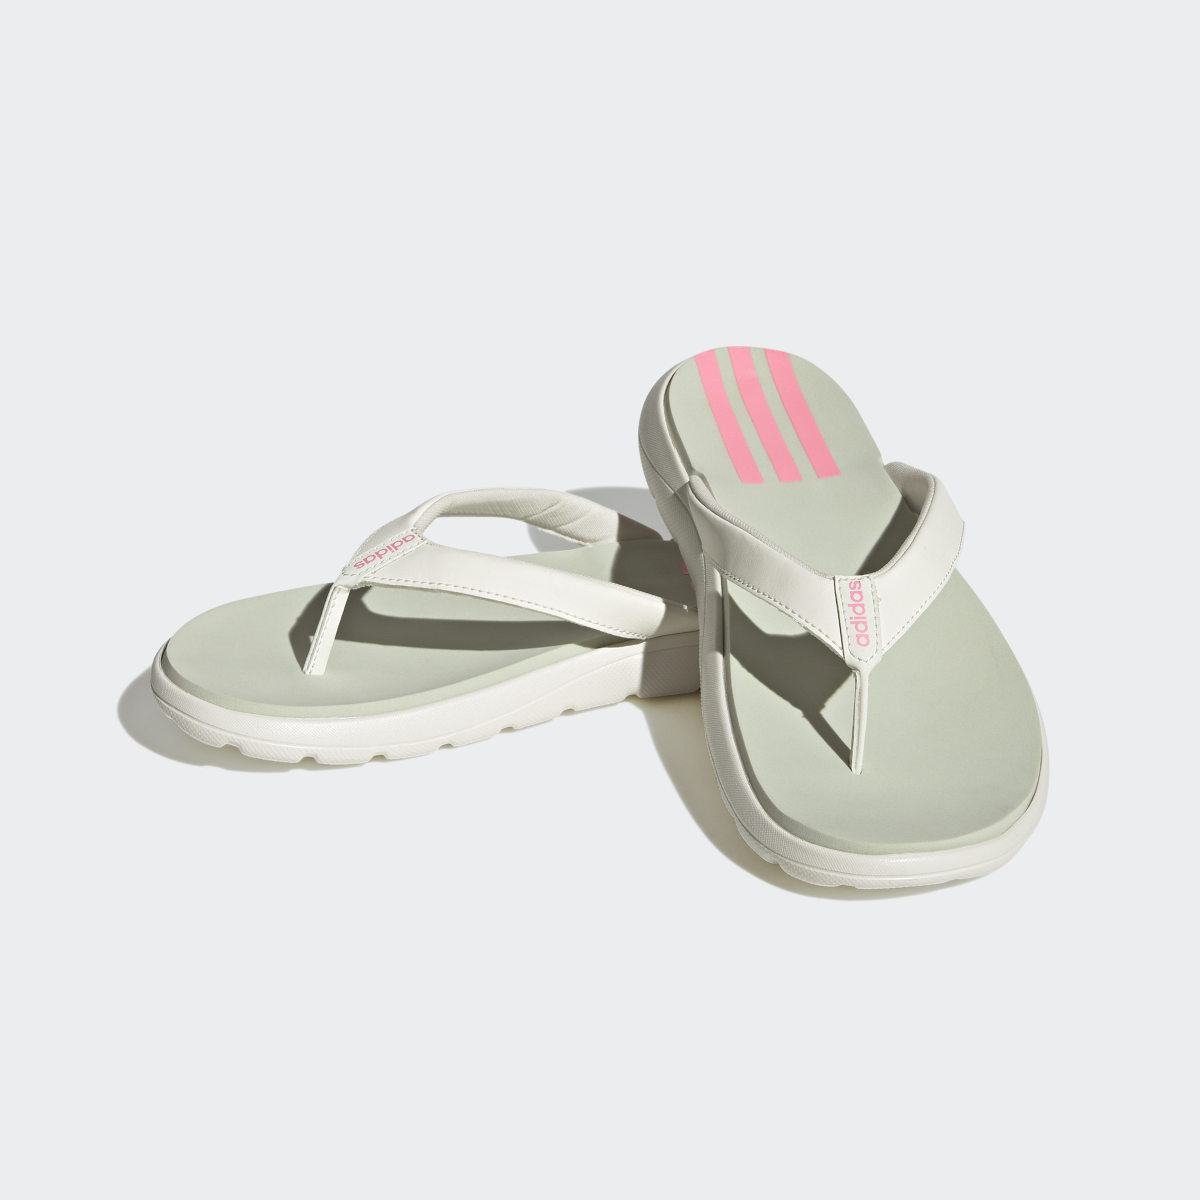 Adidas Comfort Flip-Flops. 5